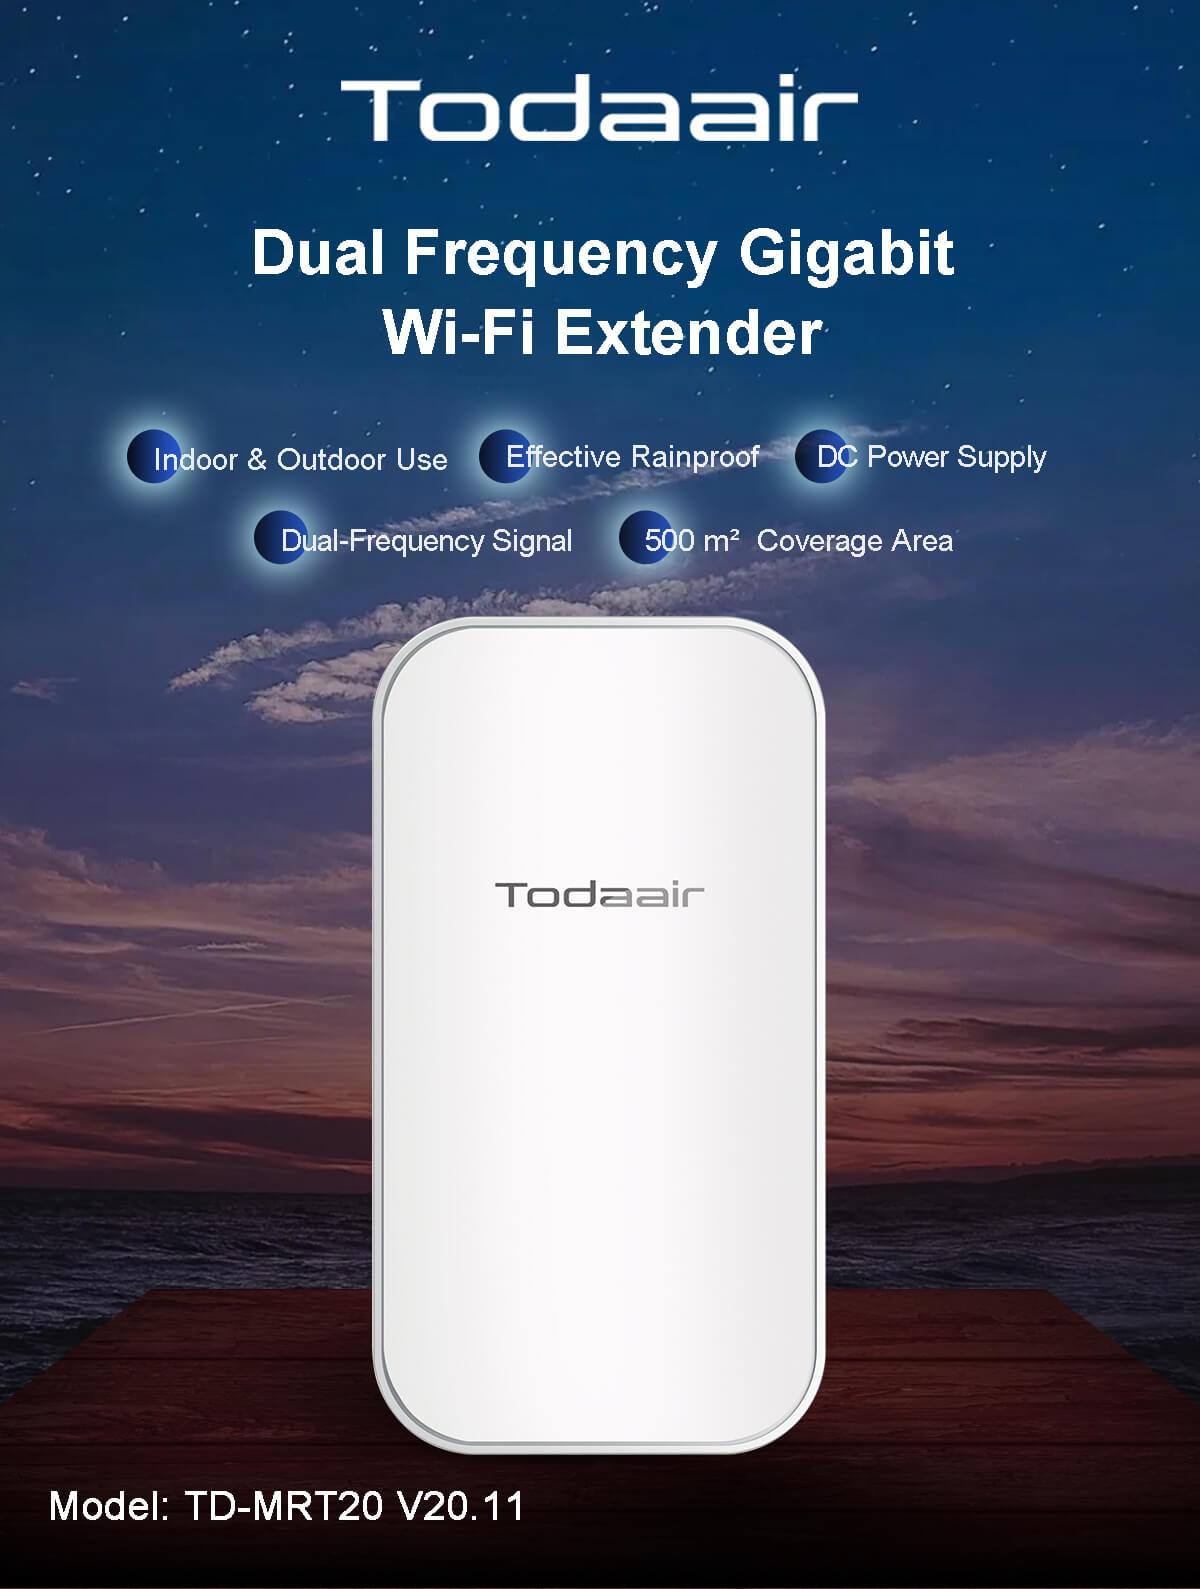 Todaair dual frequency gigabit WiFi extender